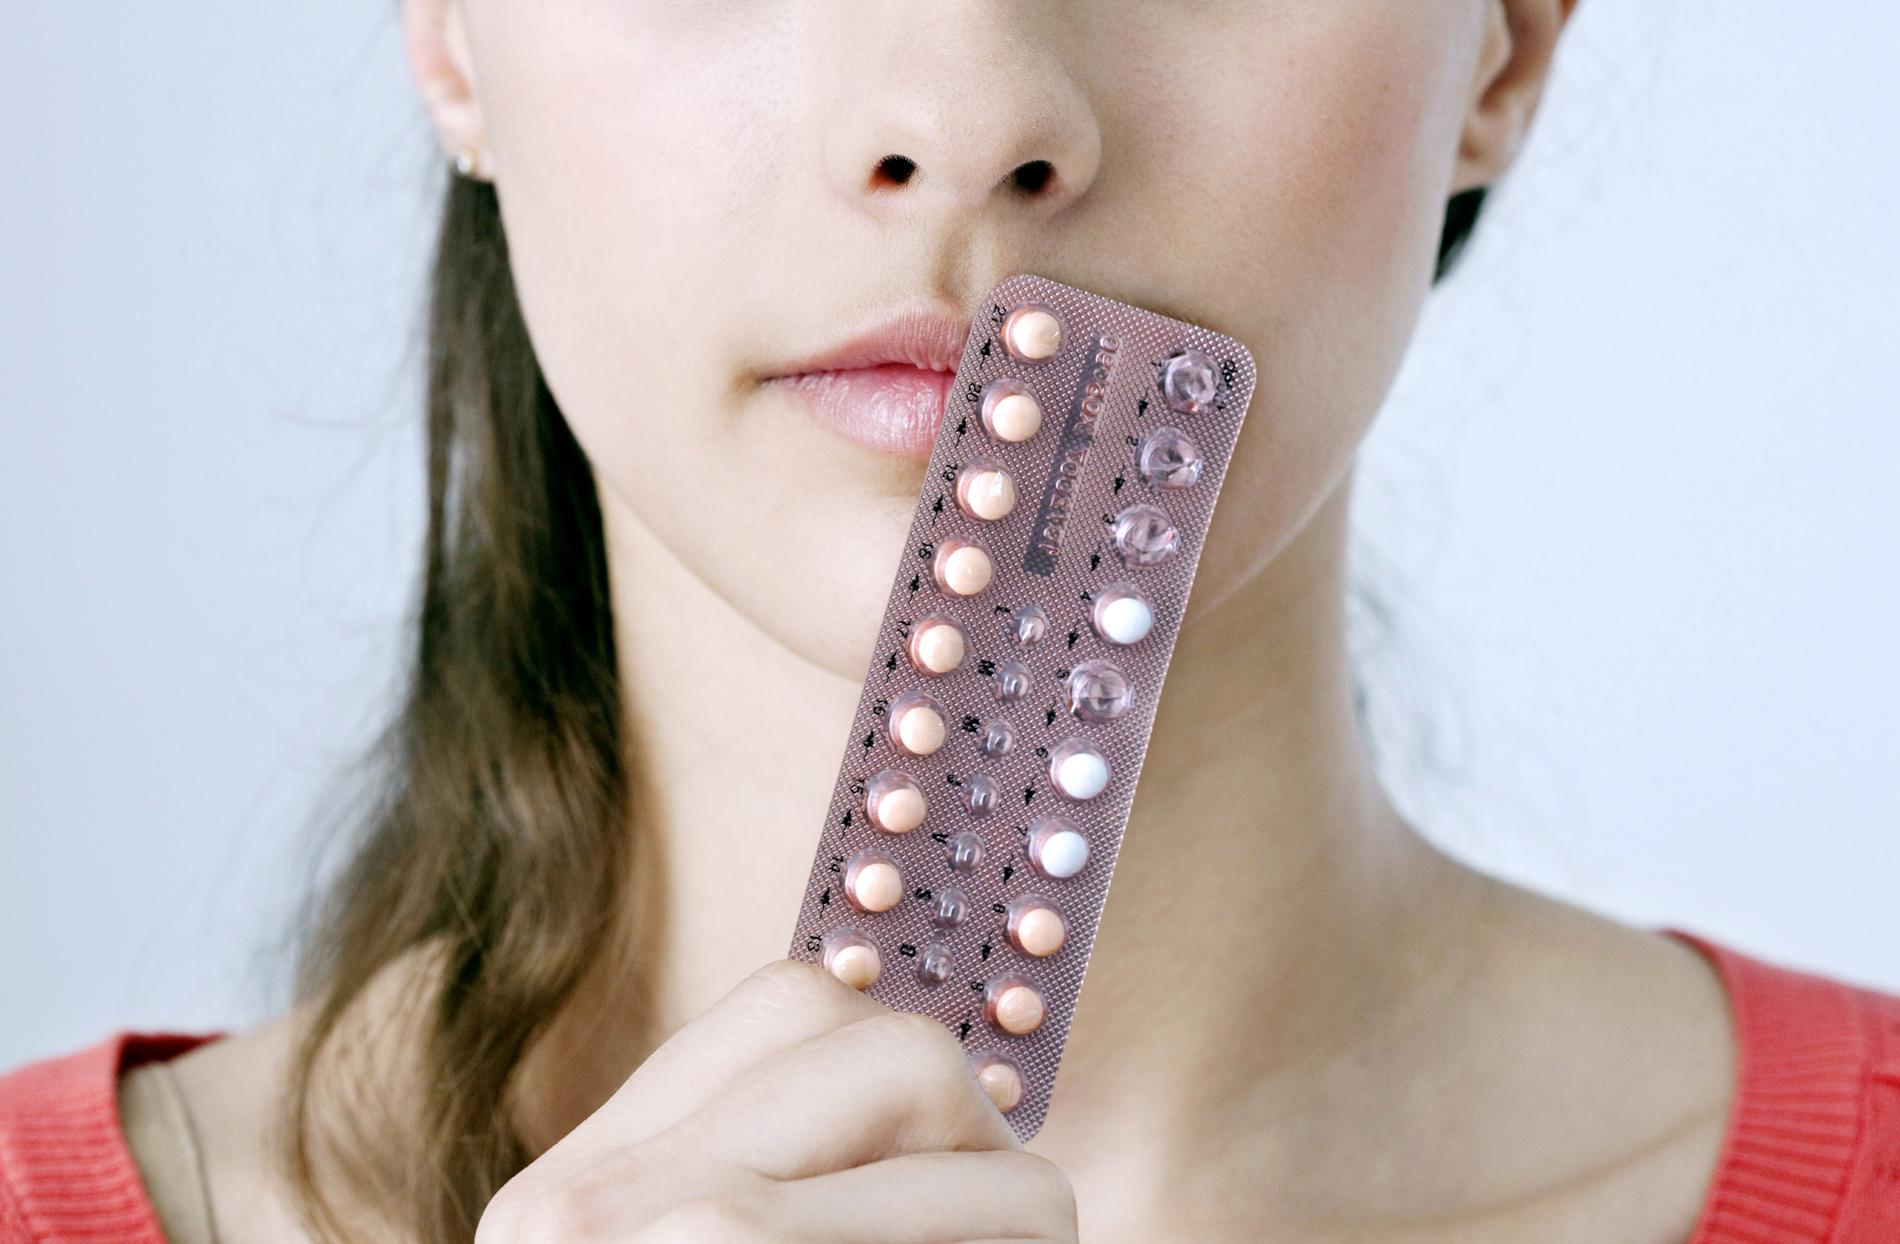 P-pillen er kanskje ikke det beste alternativet? Gynekologen guider deg gjennom de forskjellige prevensjonstypene her.